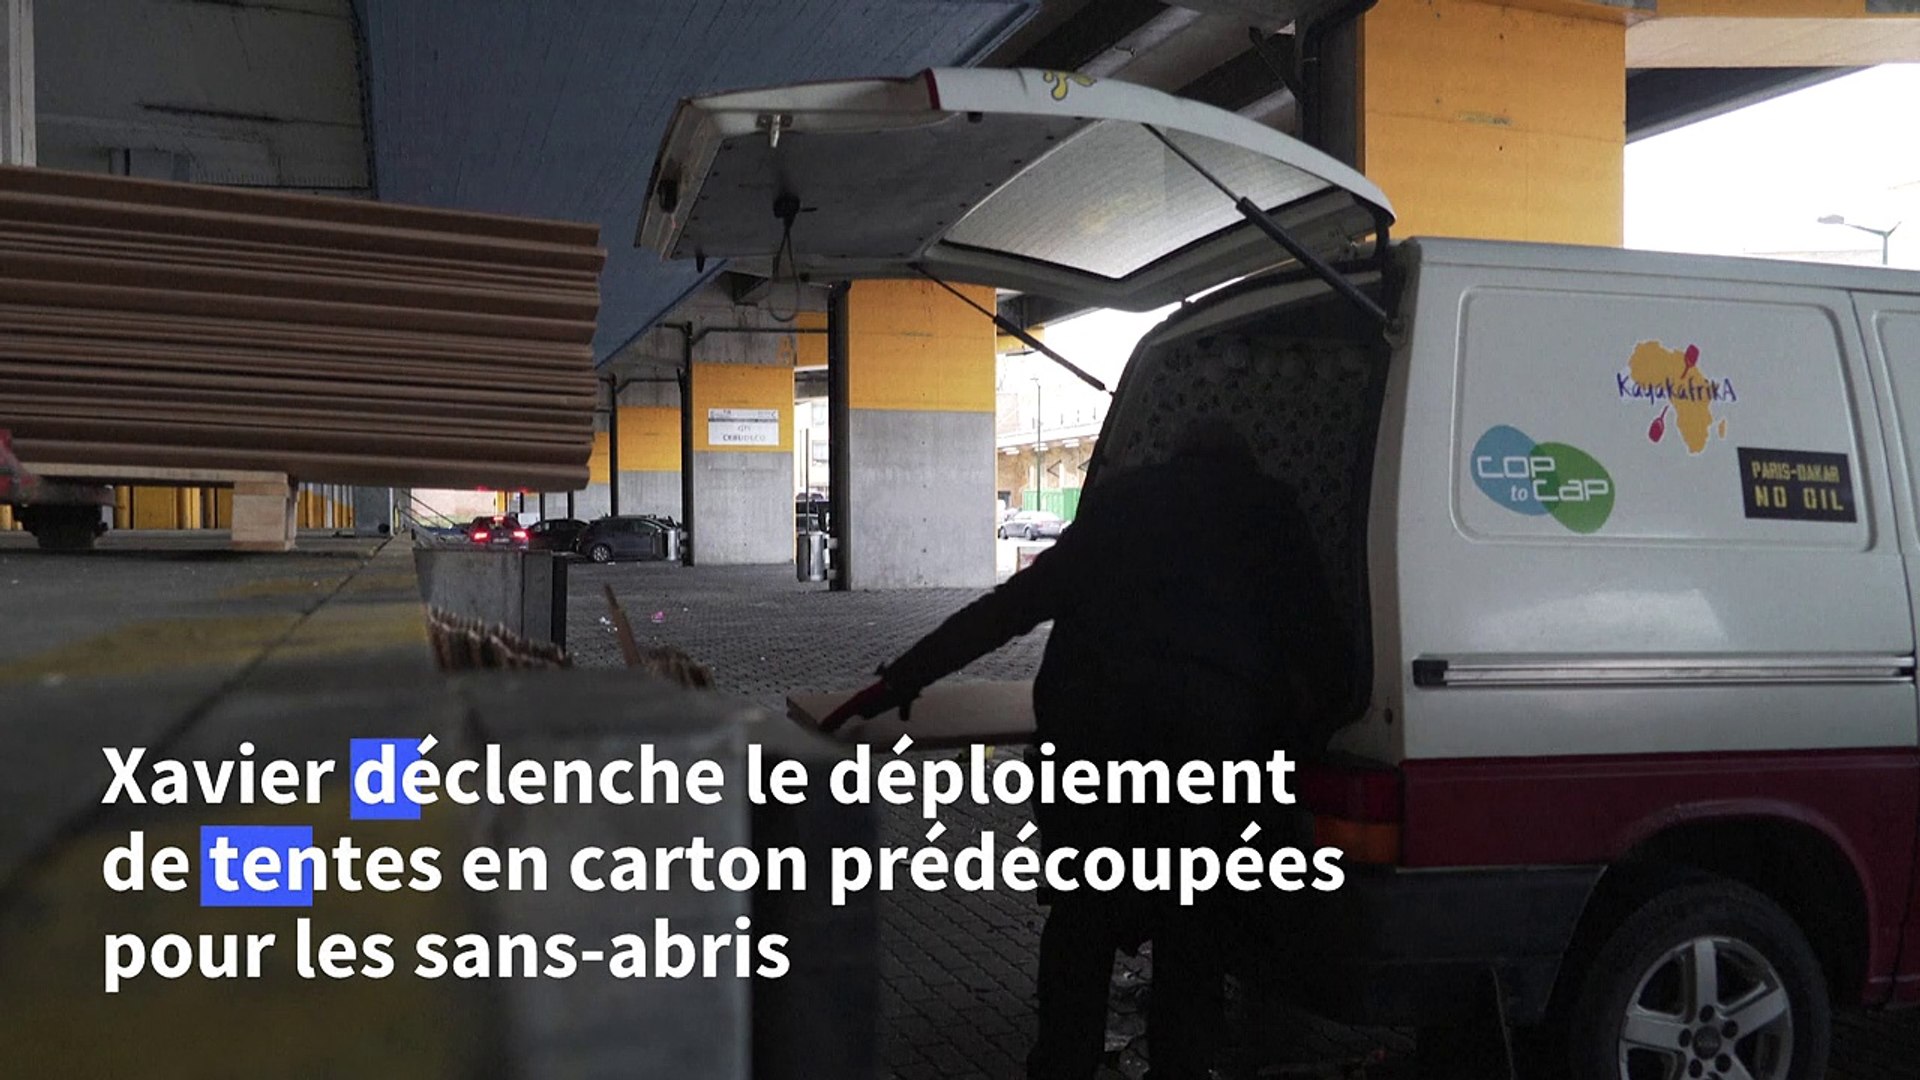 A Bruxelles, des tentes en carton pour aider les sans-abris - Vidéo  Dailymotion